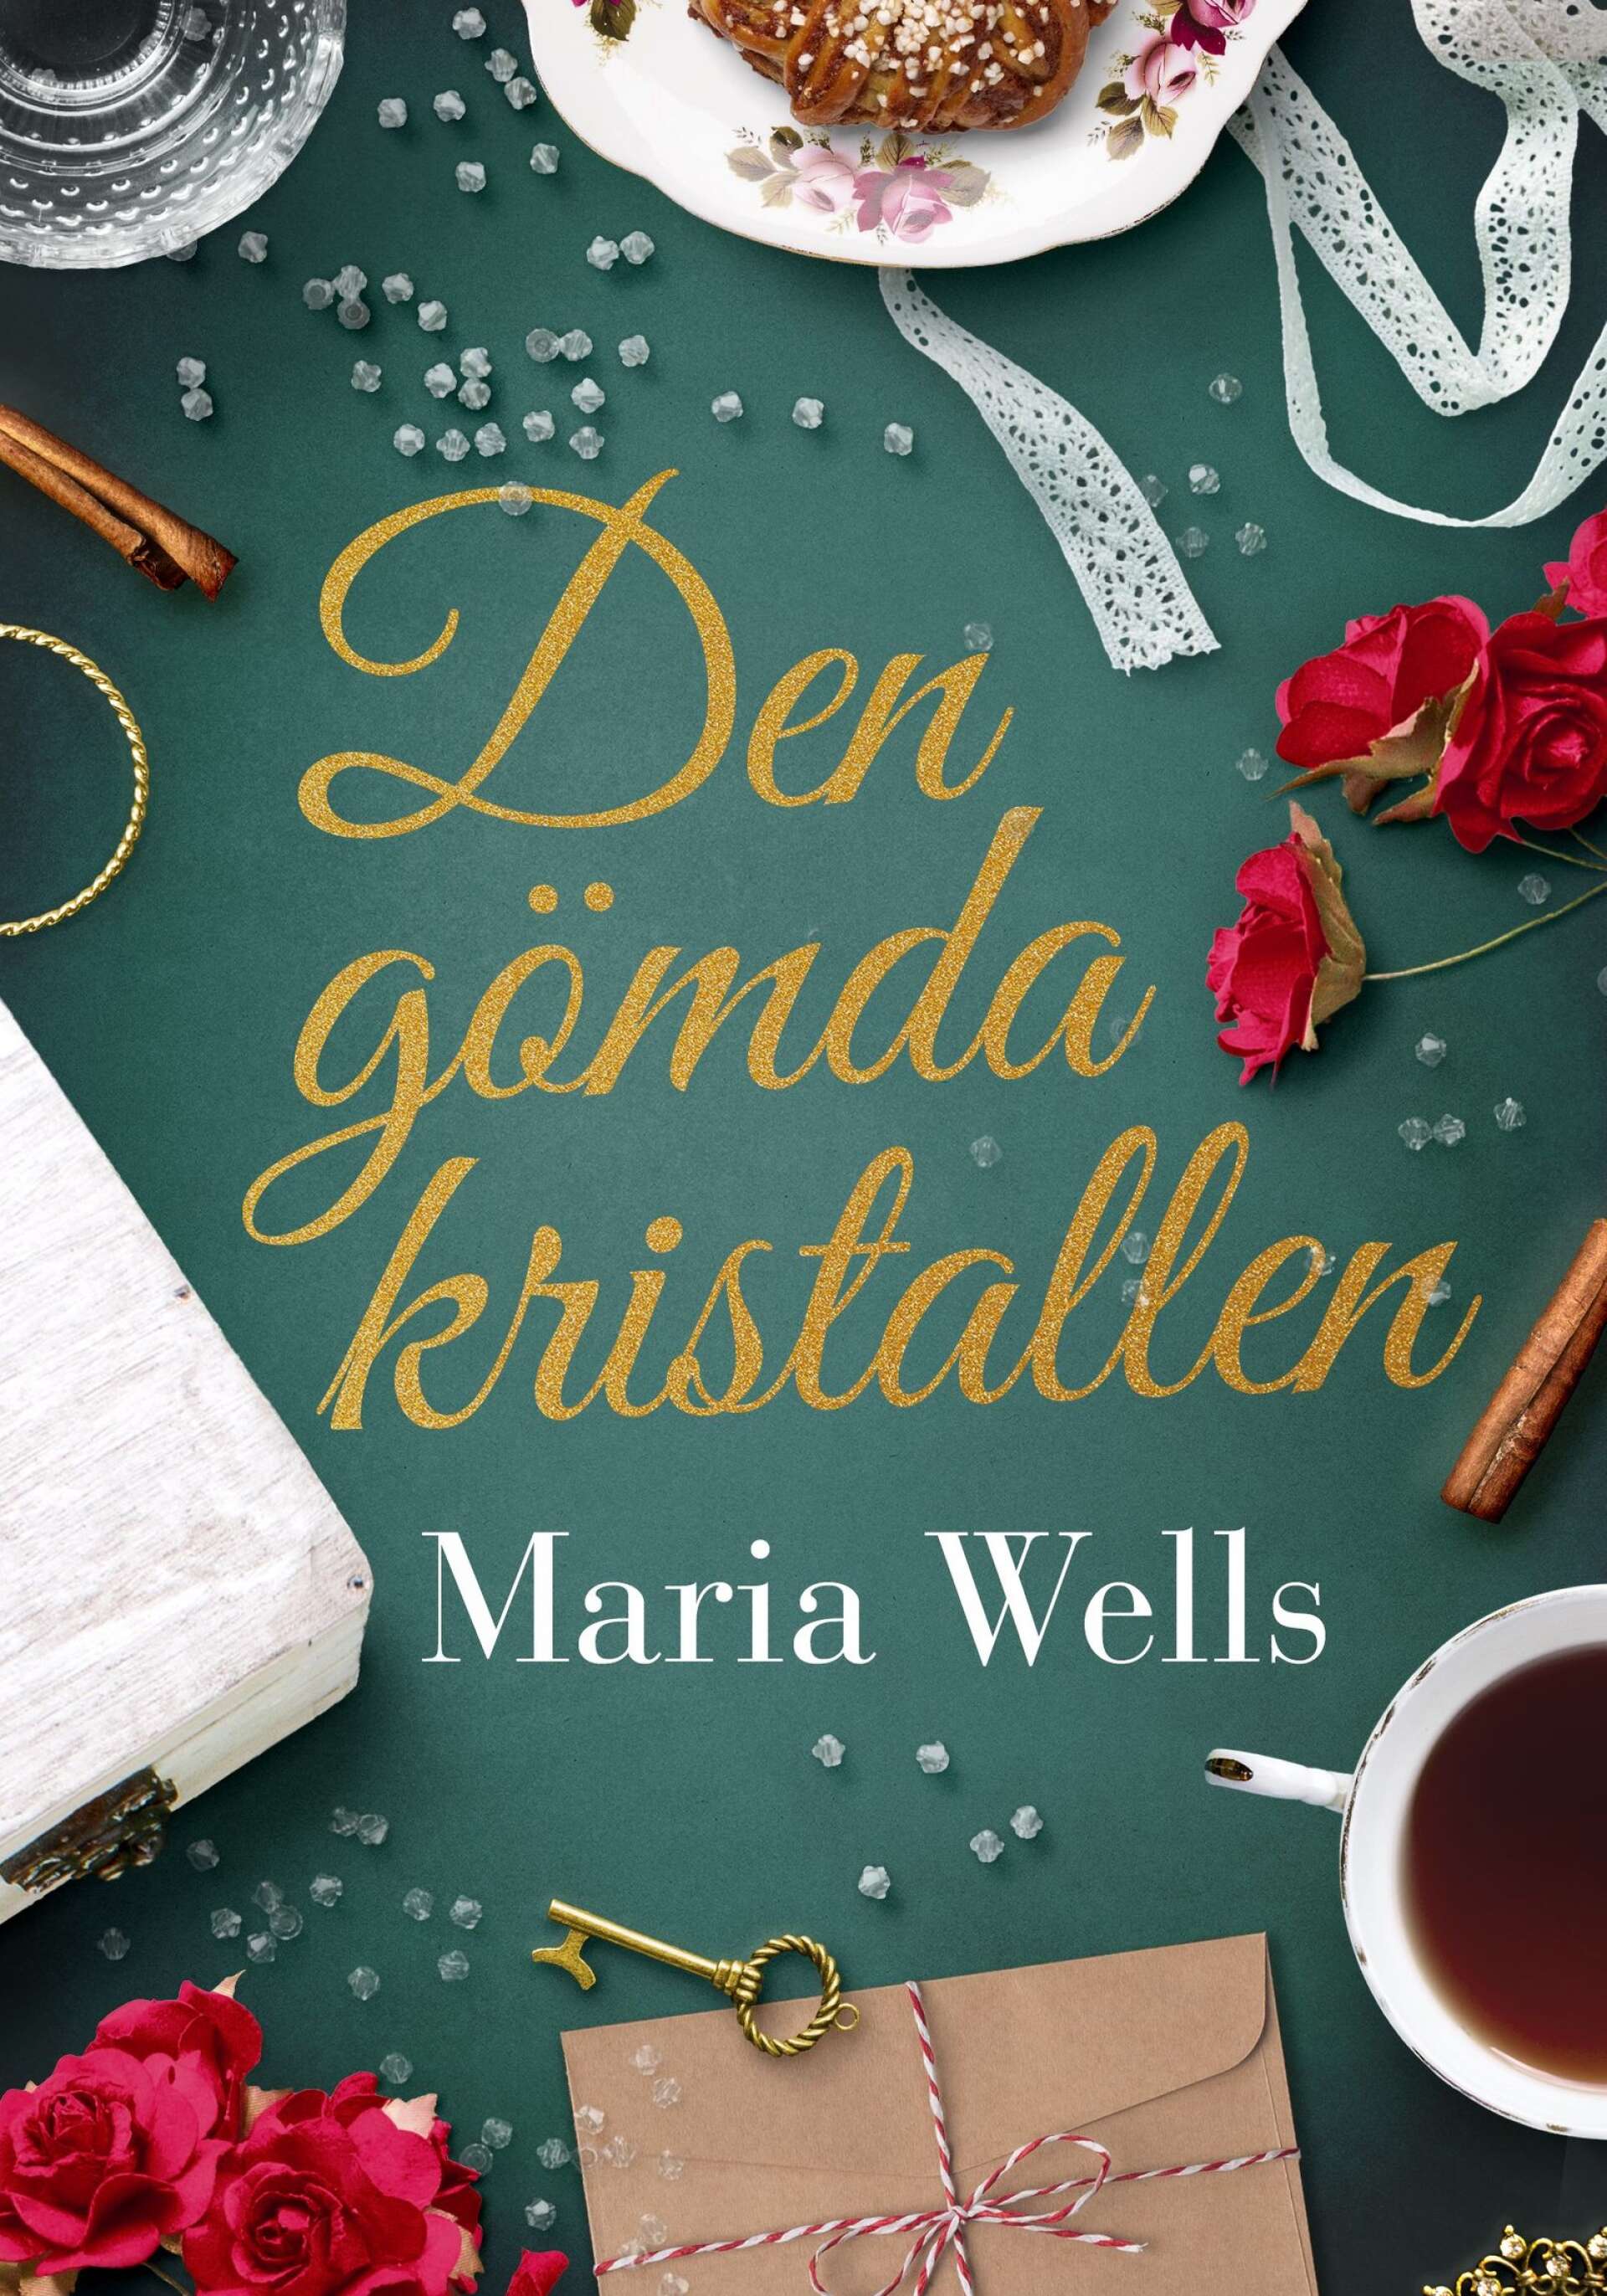 Maria Wells nya bok är flitigt utlånad.